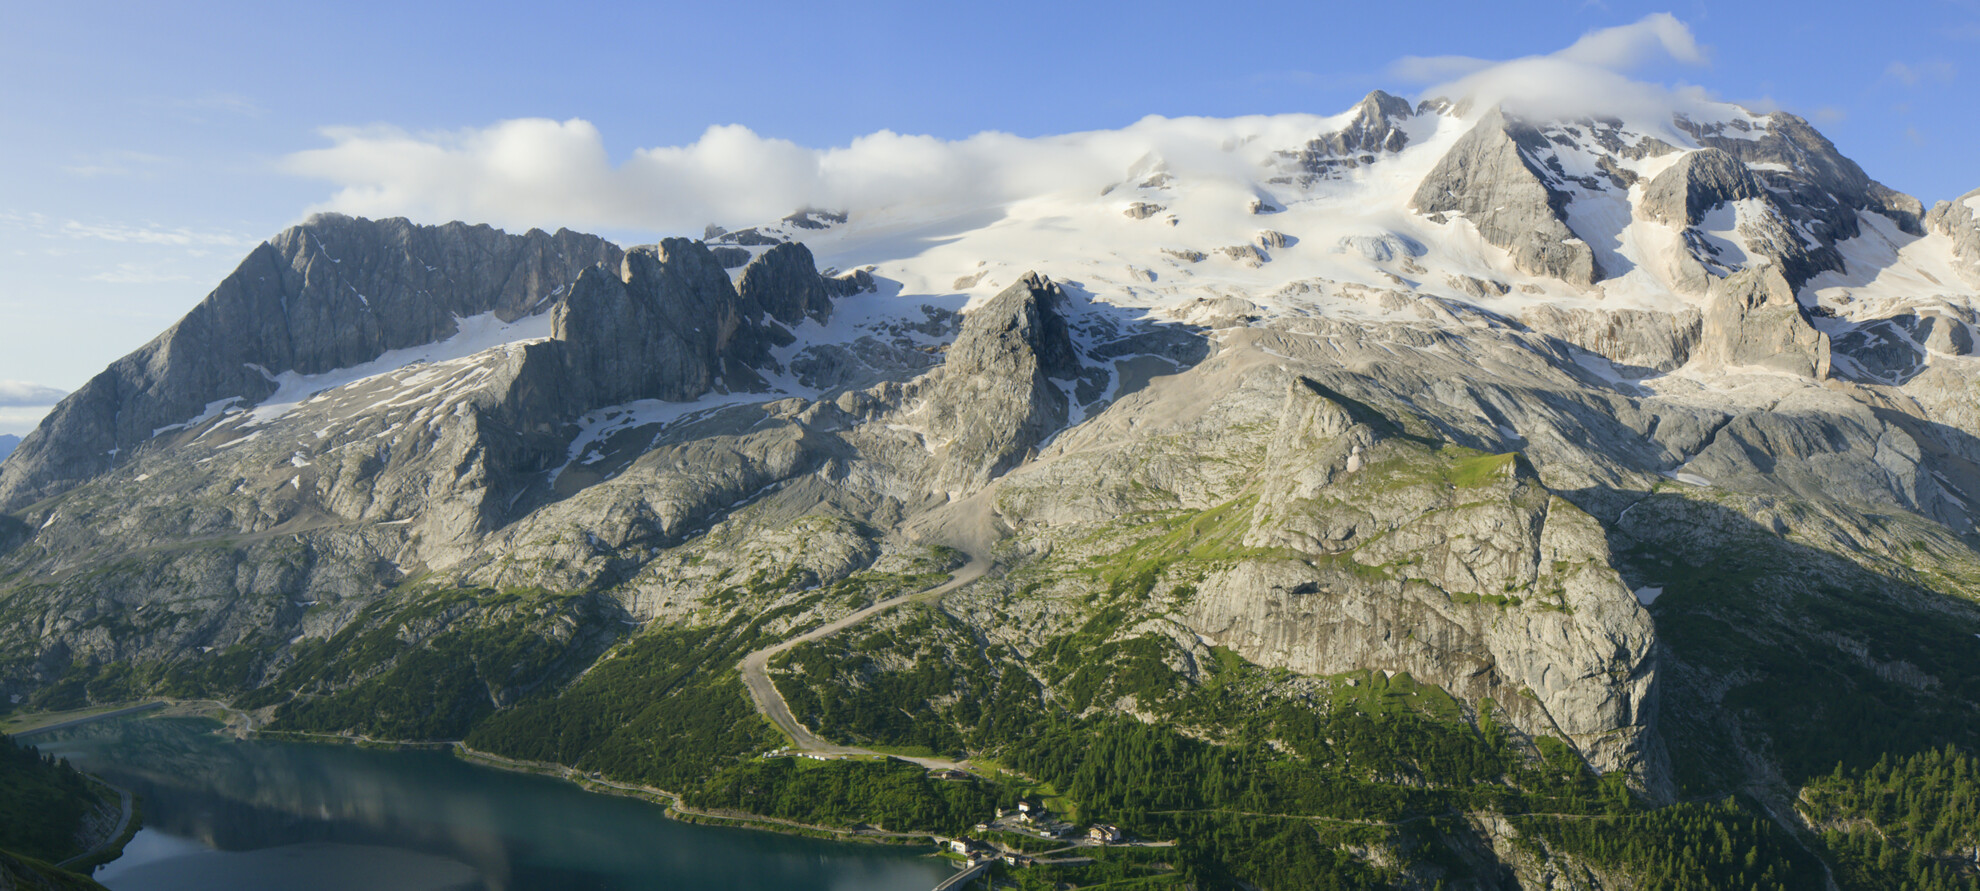 Avventure sulle Dolomiti: <br> il ghiacciaio